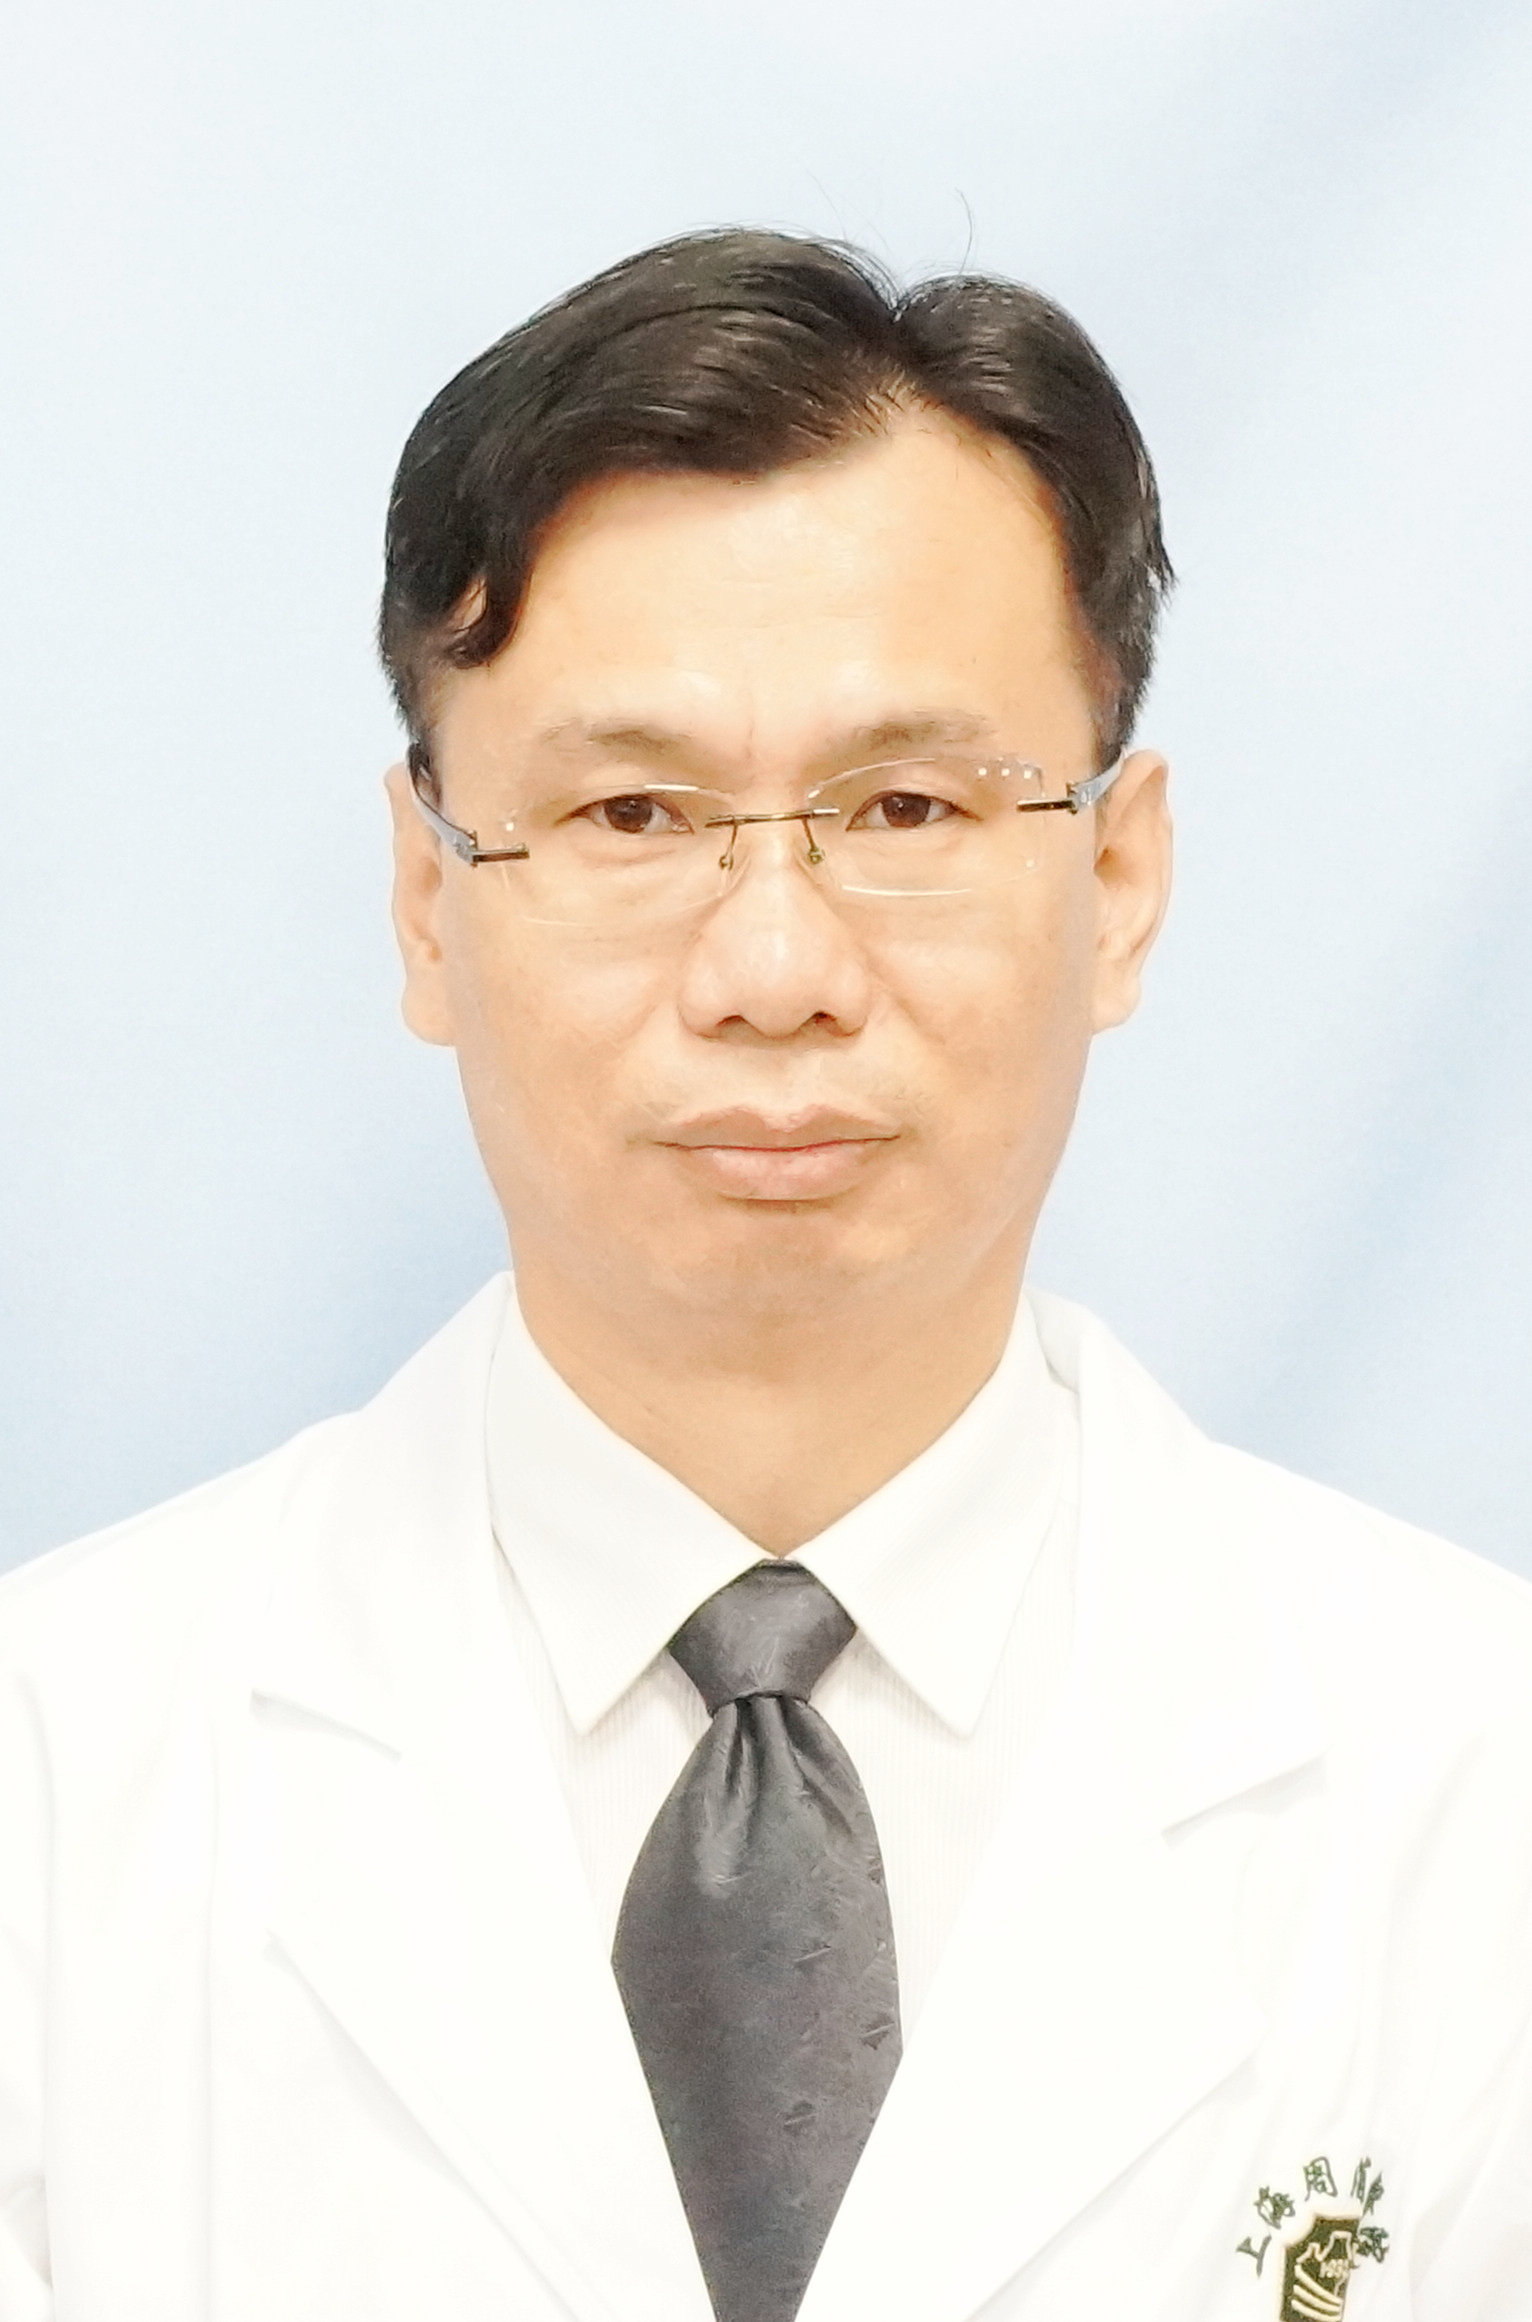 刘海健  副主任医师、副教授、硕士研究生导师